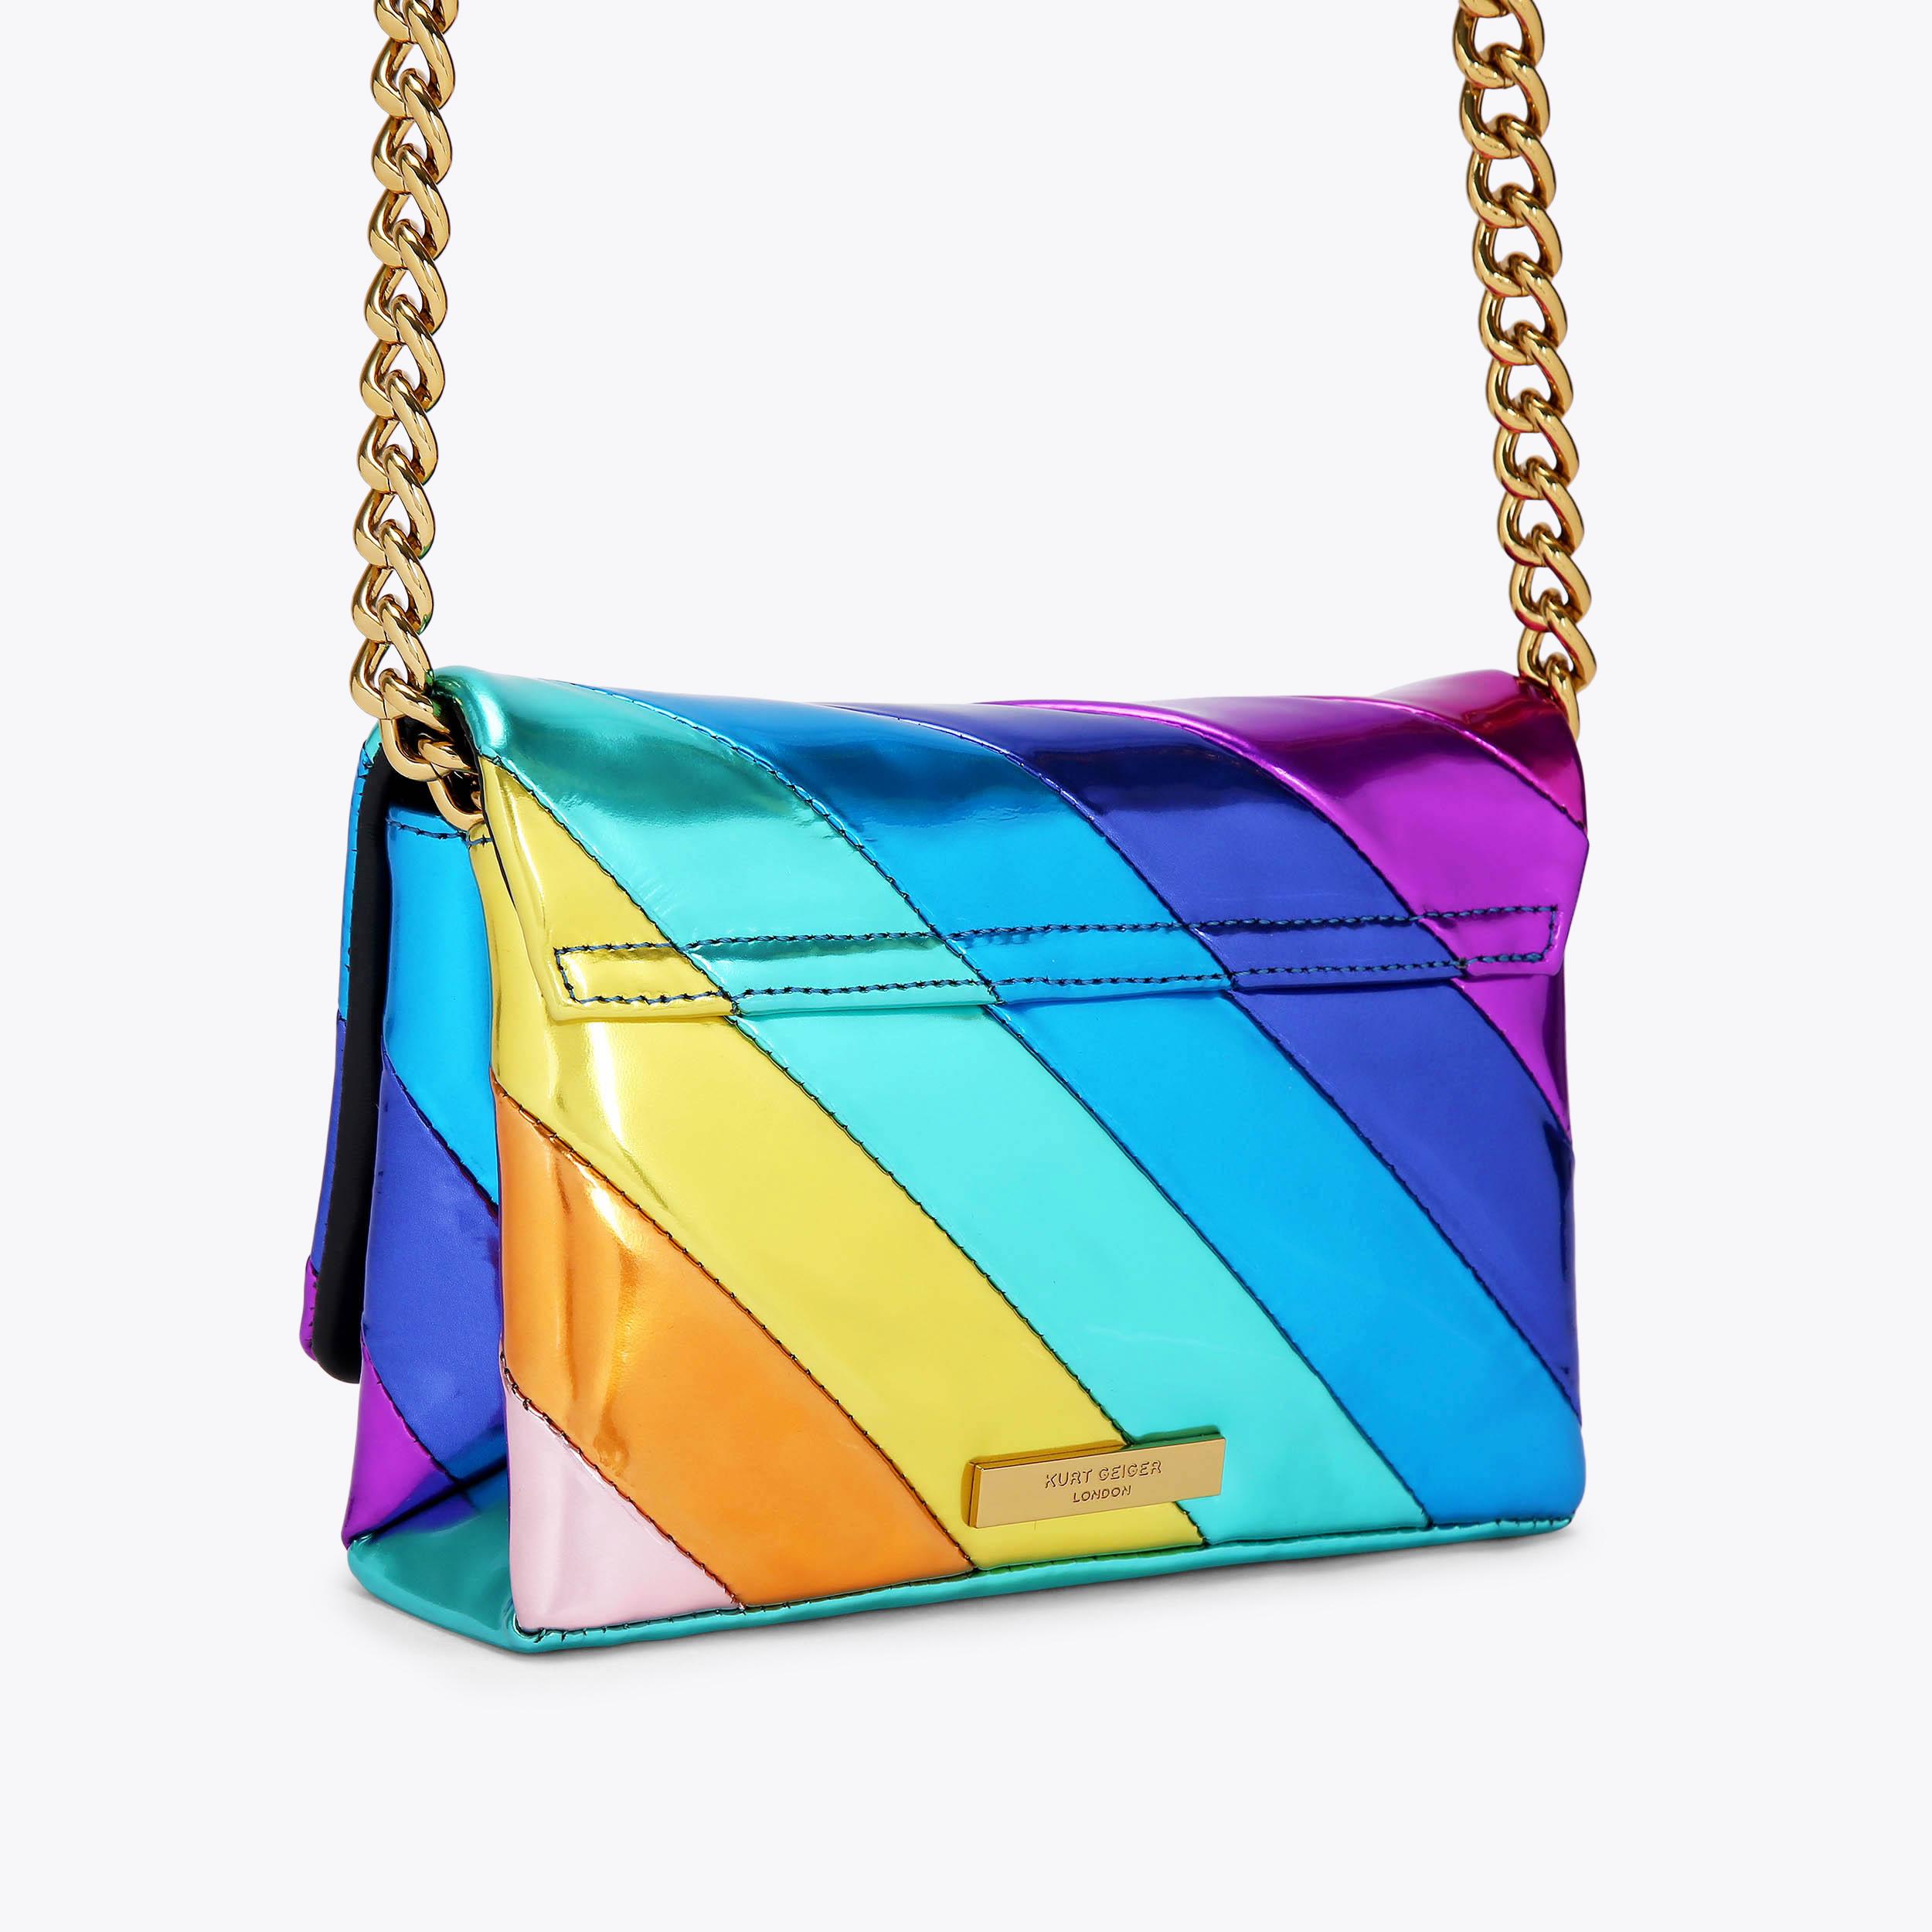 MINI KENSINGTON LONG FLAP Rainbow Cross Body Bag by KURT GEIGER LONDON